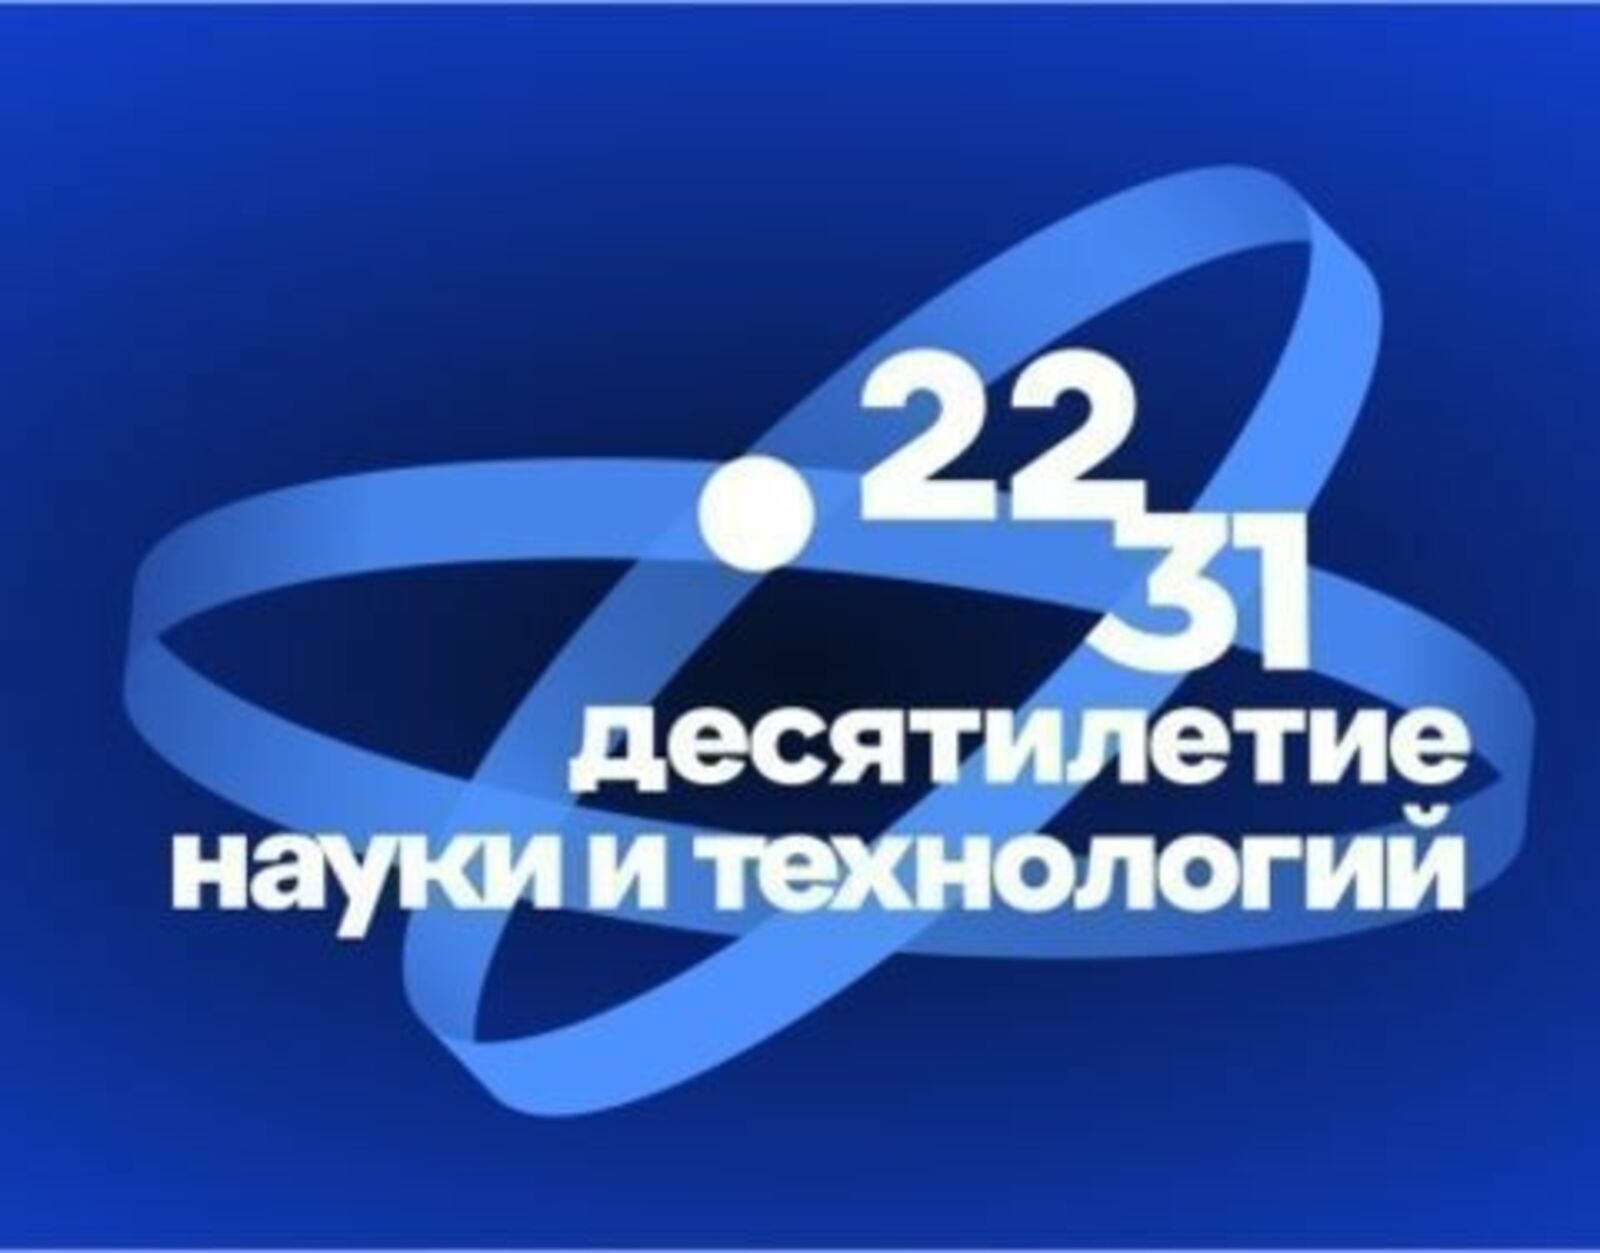 Почти 1,5 тысяч заявок поступило со всей России на конкурс «Талисман десятилетия науки и технологий»